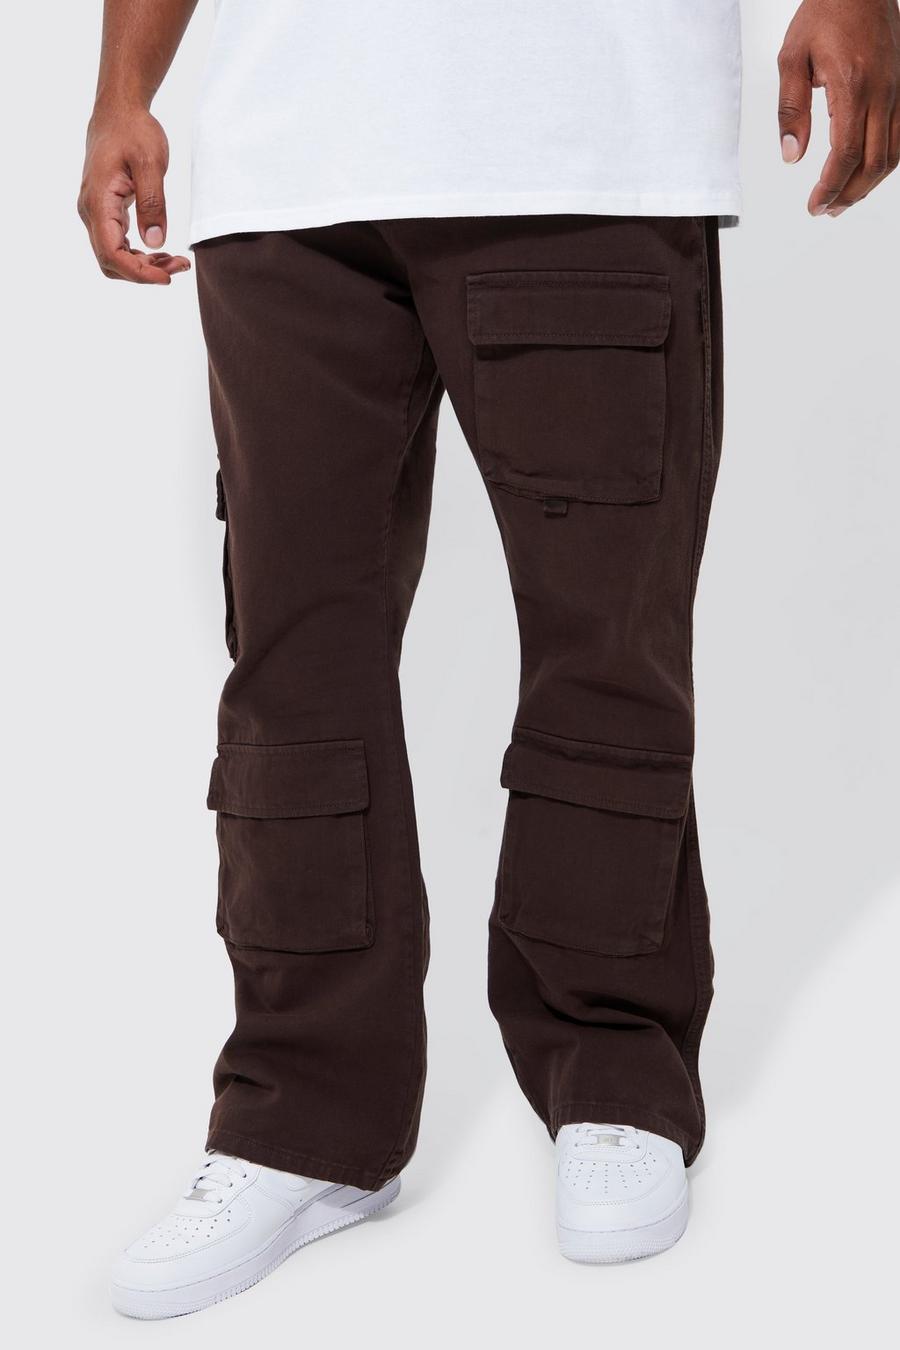 Grande taille - Pantalon cargo flare, Chocolate braun